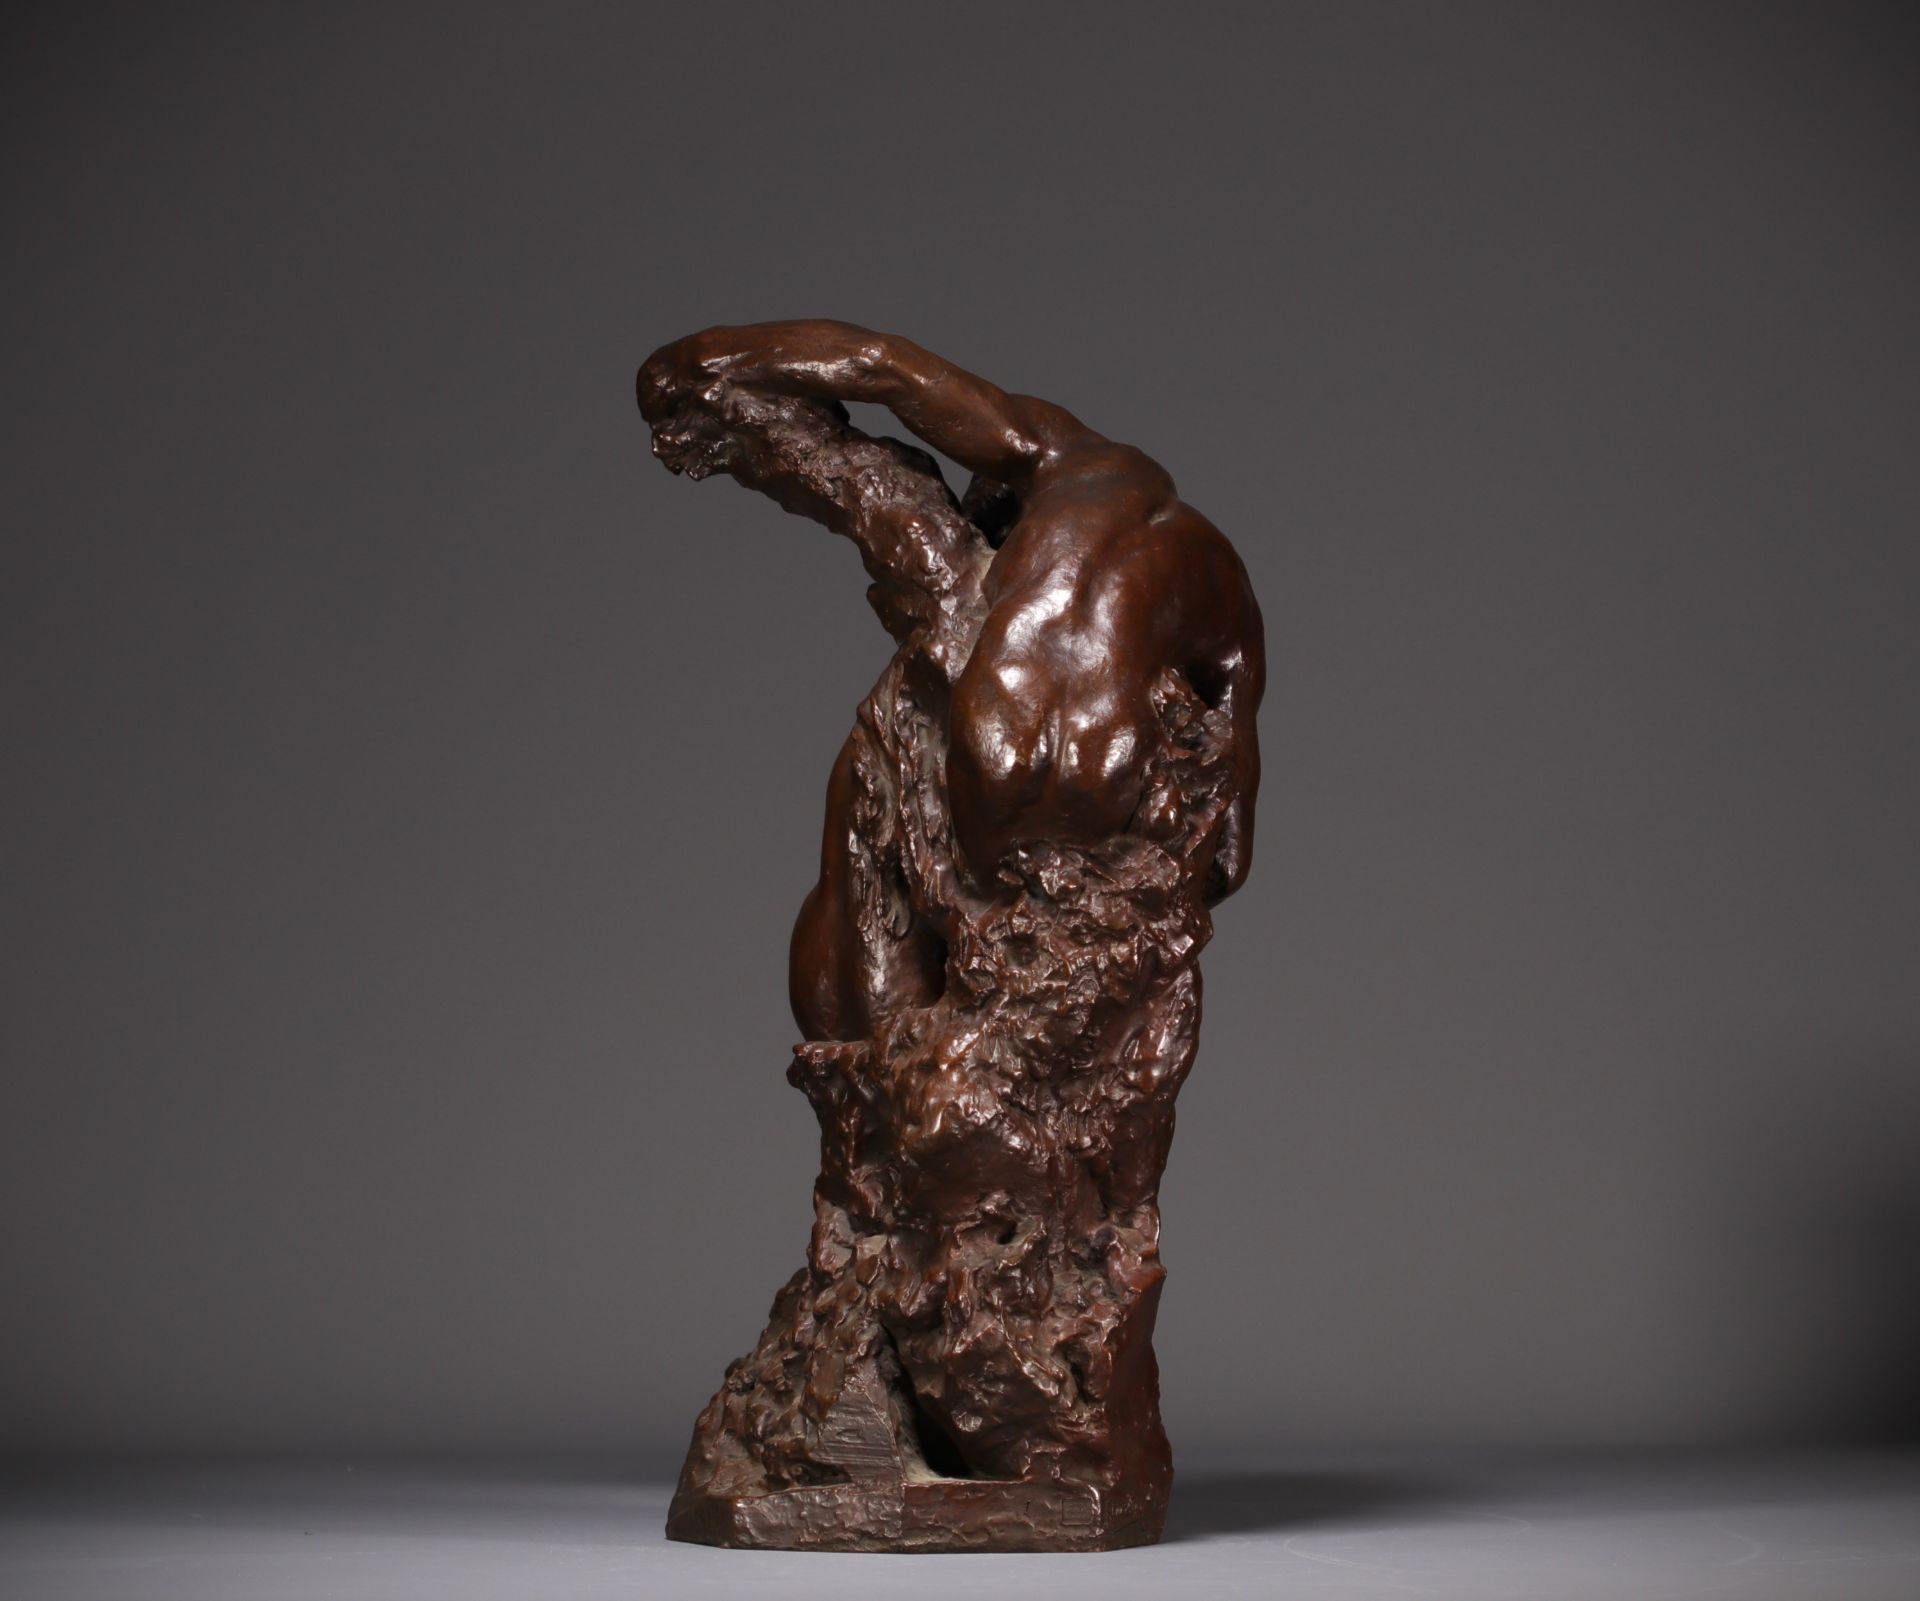 Jules DESBOIS (1851-1935) "L'Amour" Lost wax bronze, signed J. Desbois, nÂ°1, Stamp Hebrard foundry. - Image 5 of 7